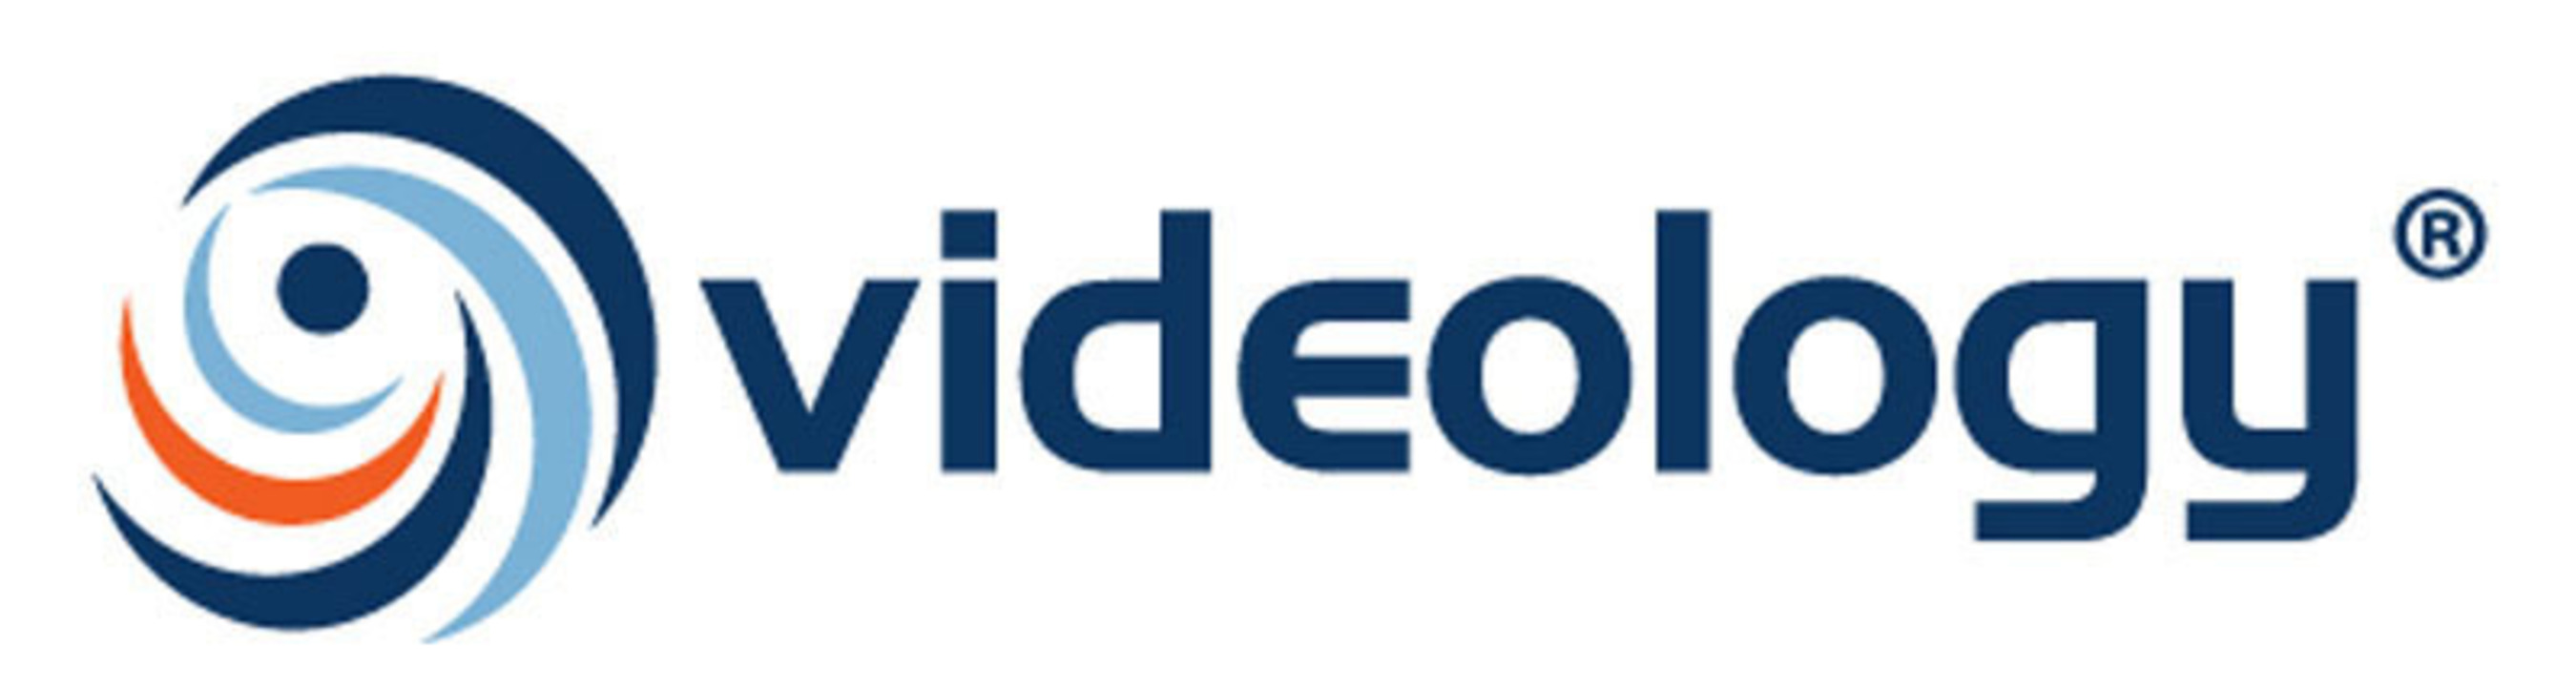 Videology logo. (PRNewsFoto/Videology) (PRNewsFoto/) (PRNewsFoto/)